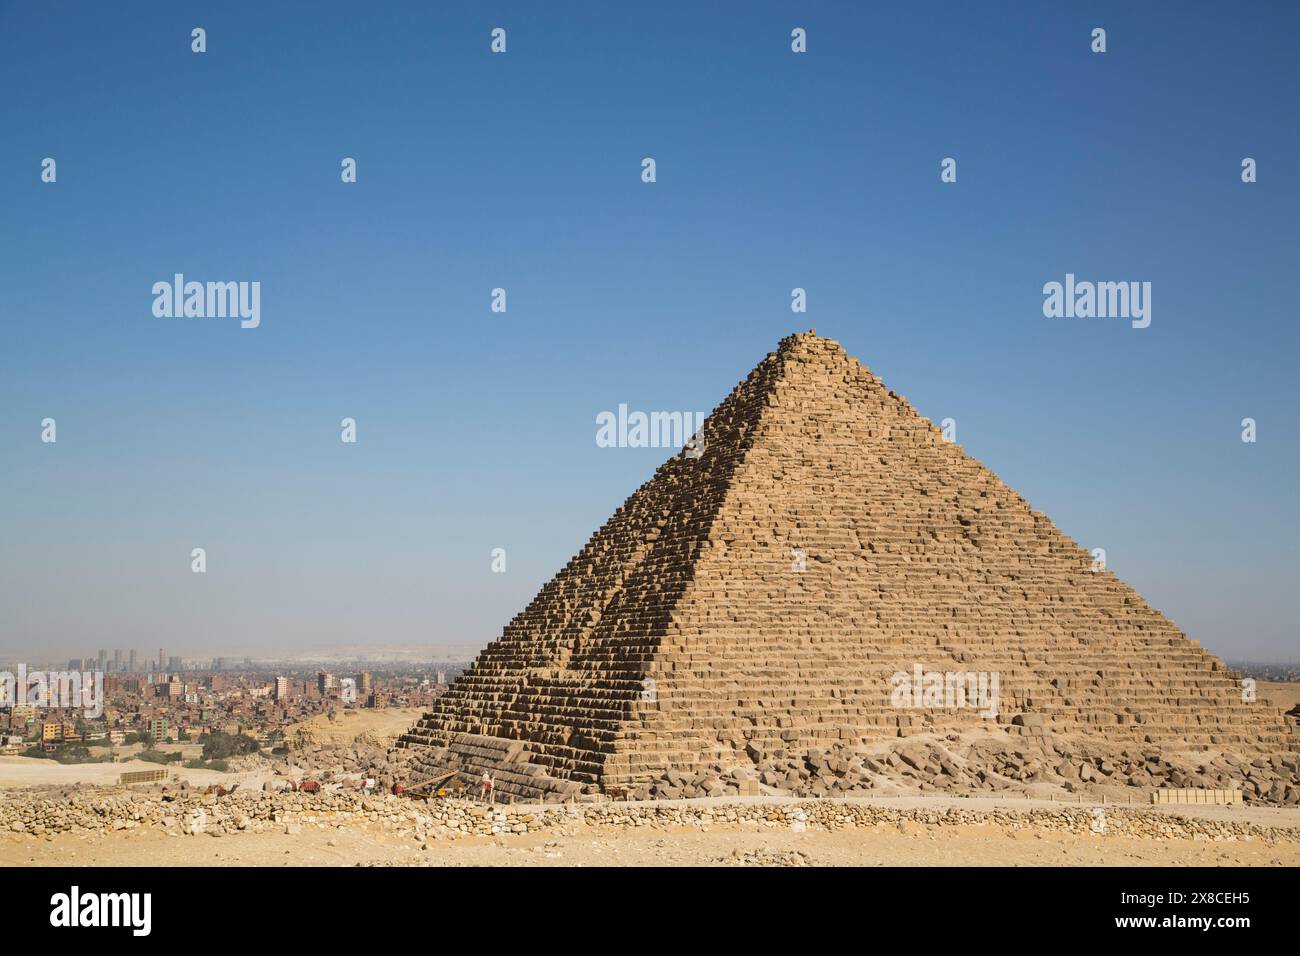 La pyramide de Mykérinos avec en arrière-plan du Caire, les pyramides de Gizeh, Giza, Egypte Banque D'Images